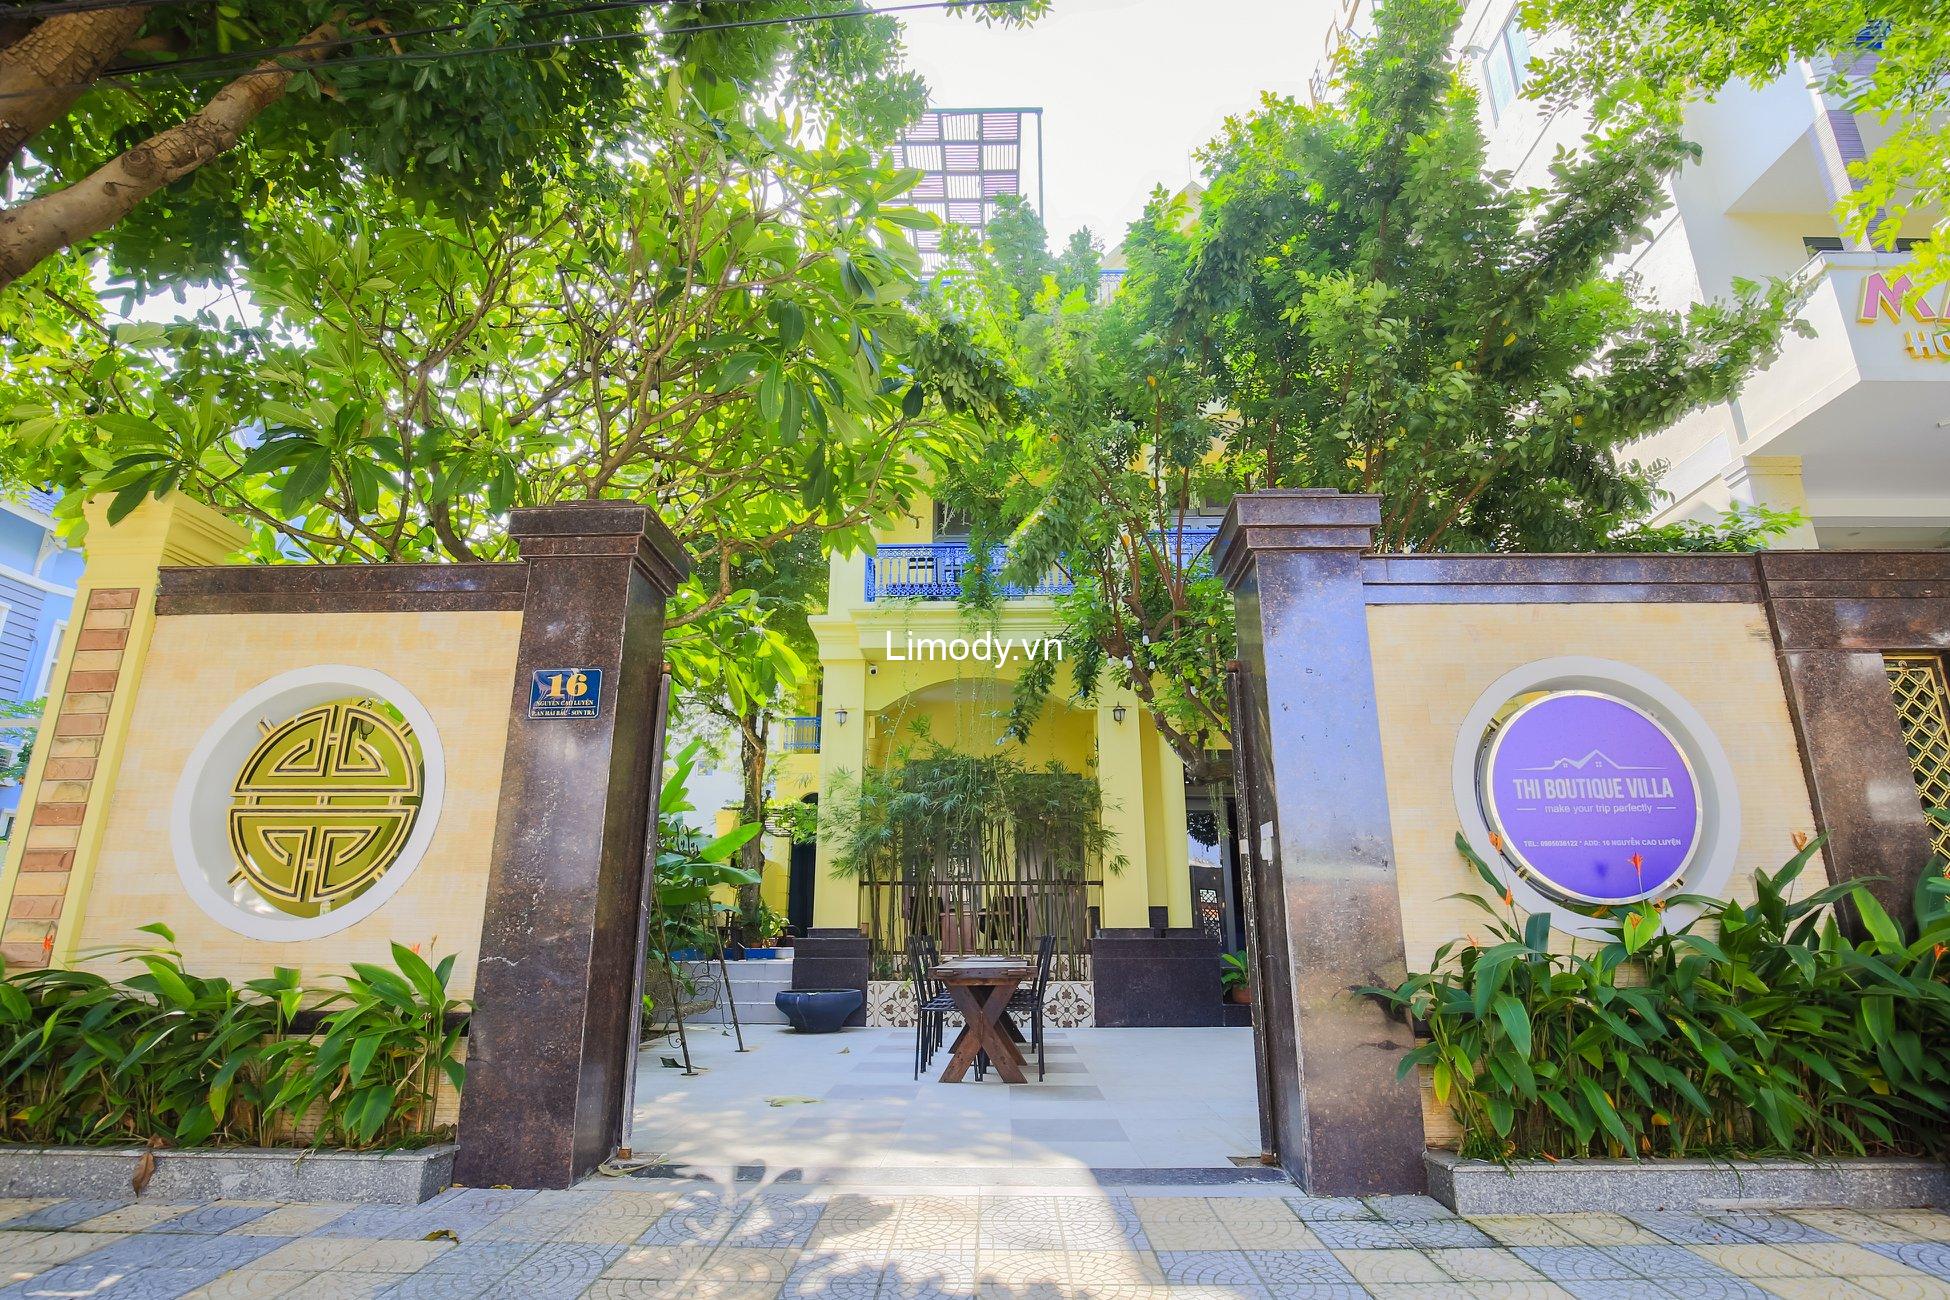 Top 20 Biệt thự villa Đà Nẵng giá rẻ view đẹp gần biển có hồ bơi cho thuê